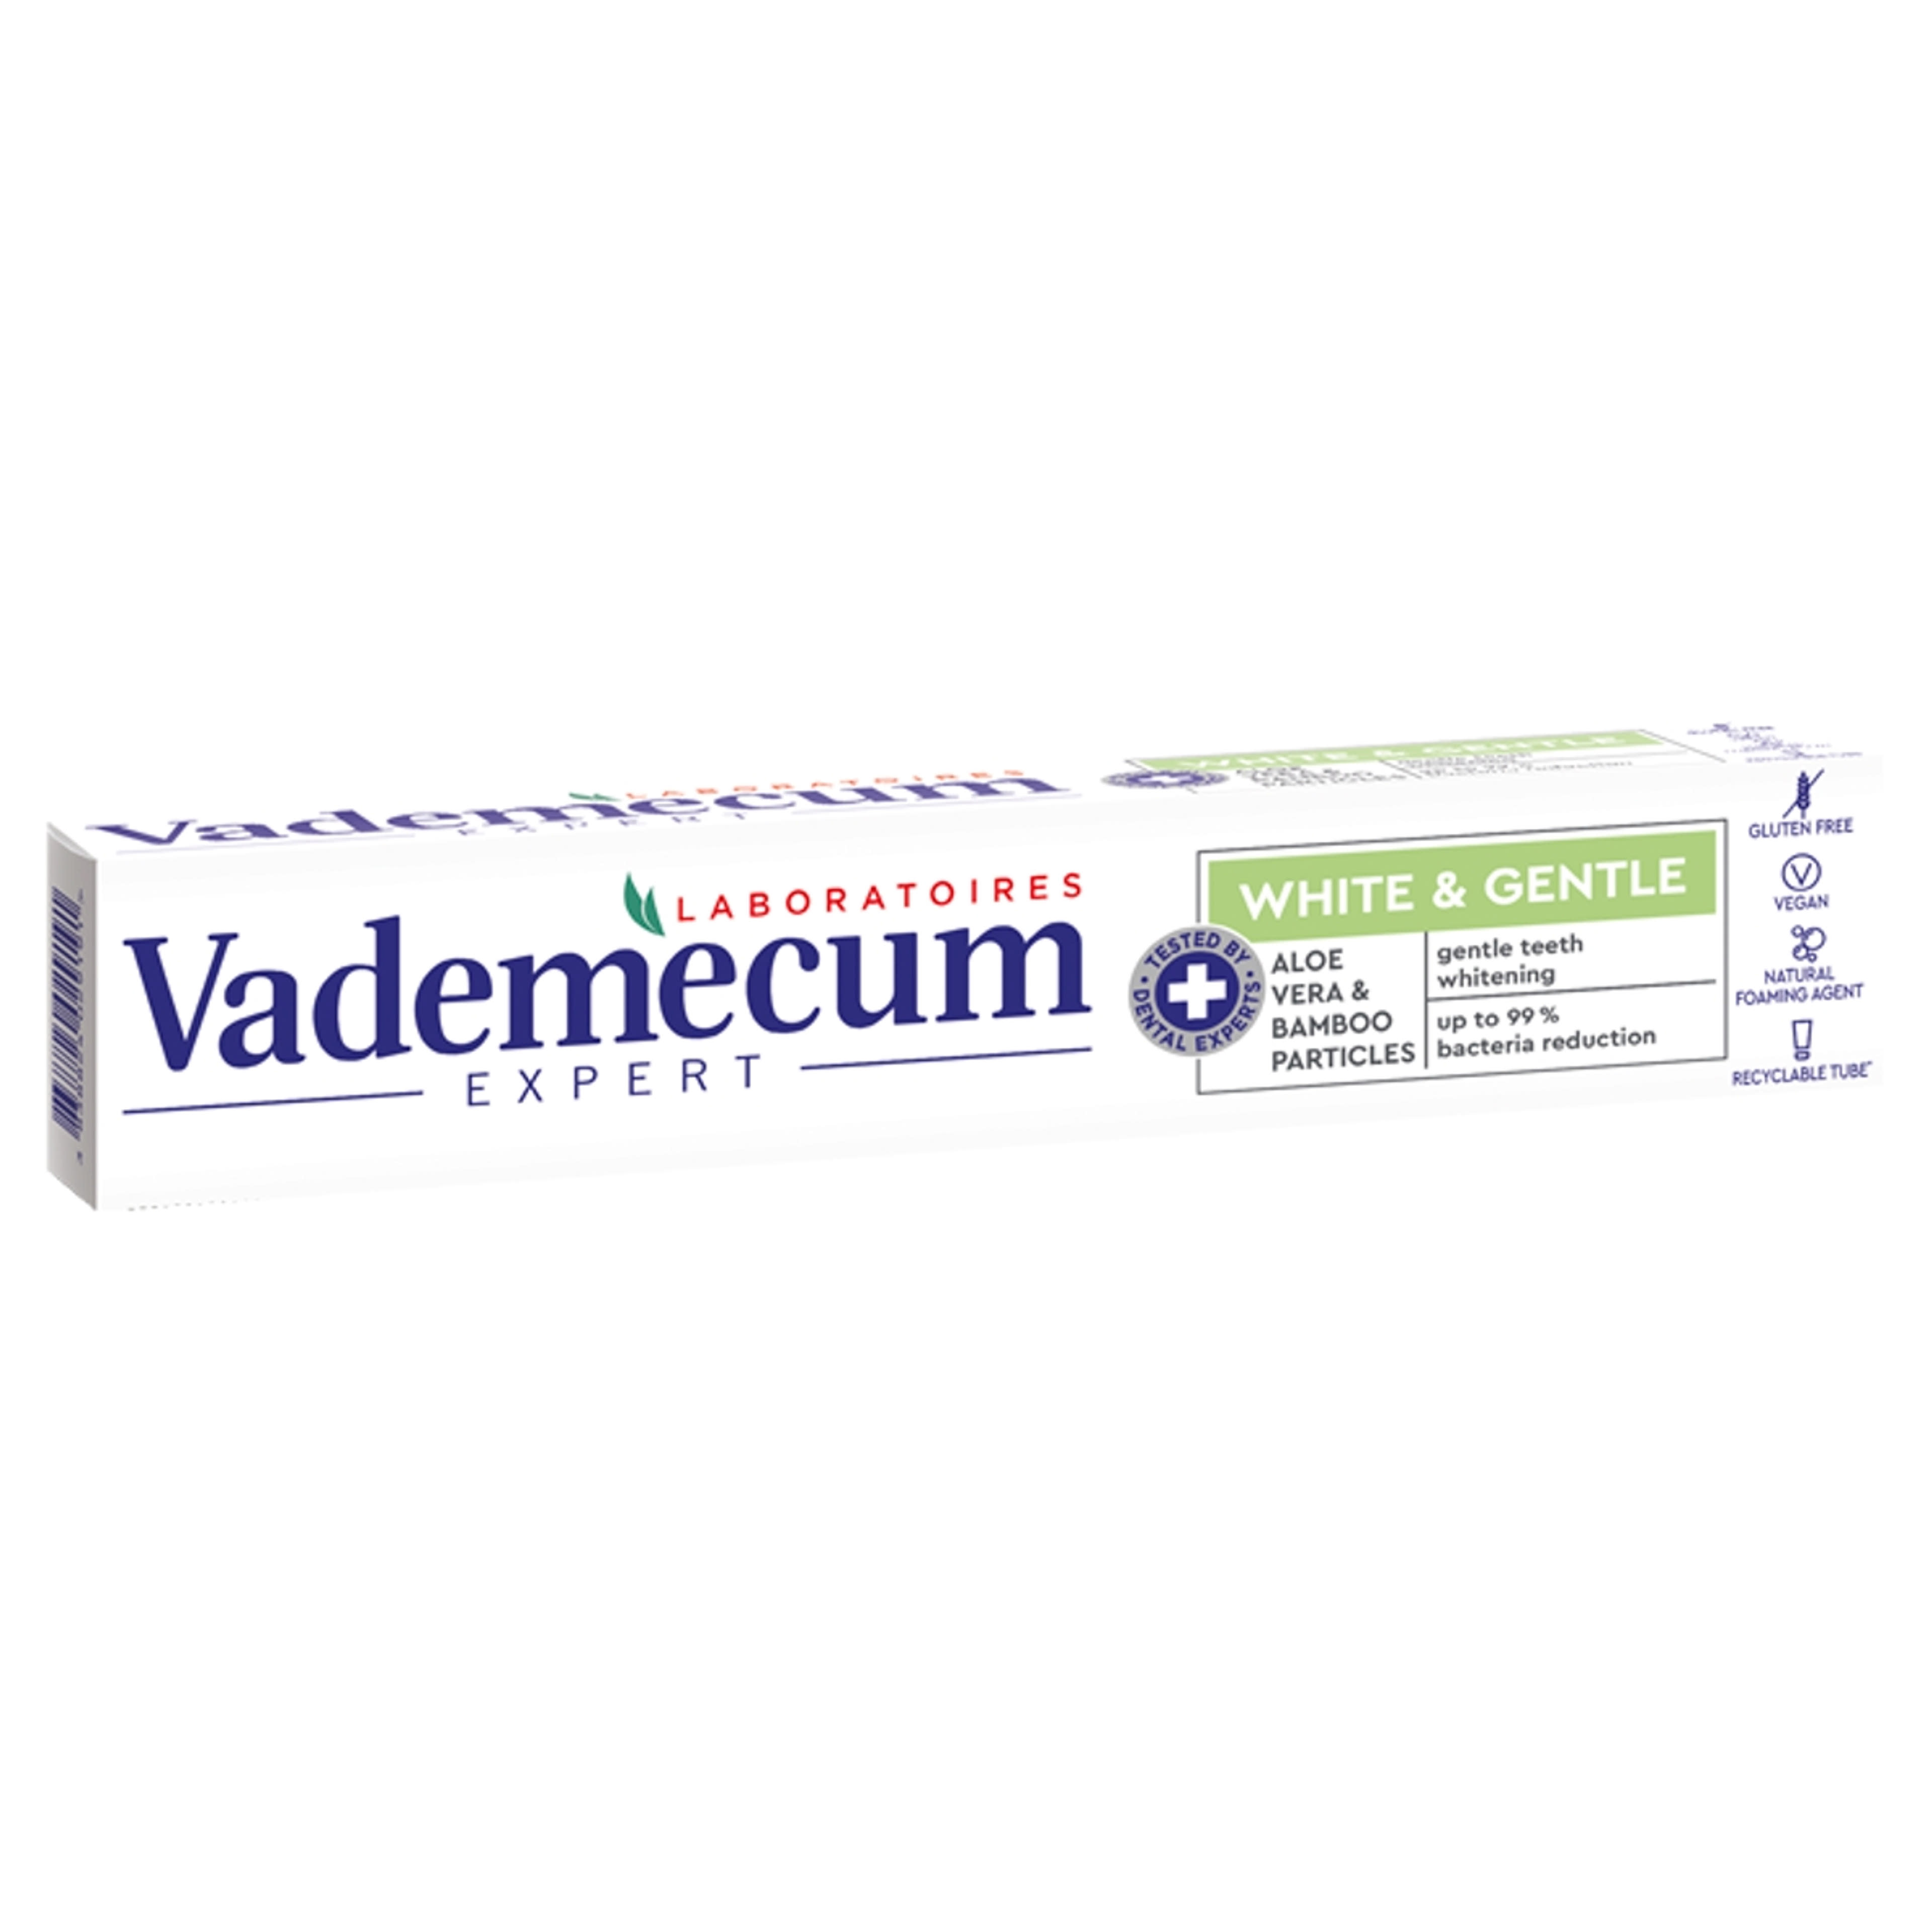 Vademecum Expert White & Gentle fogkrém - 75 ml-1